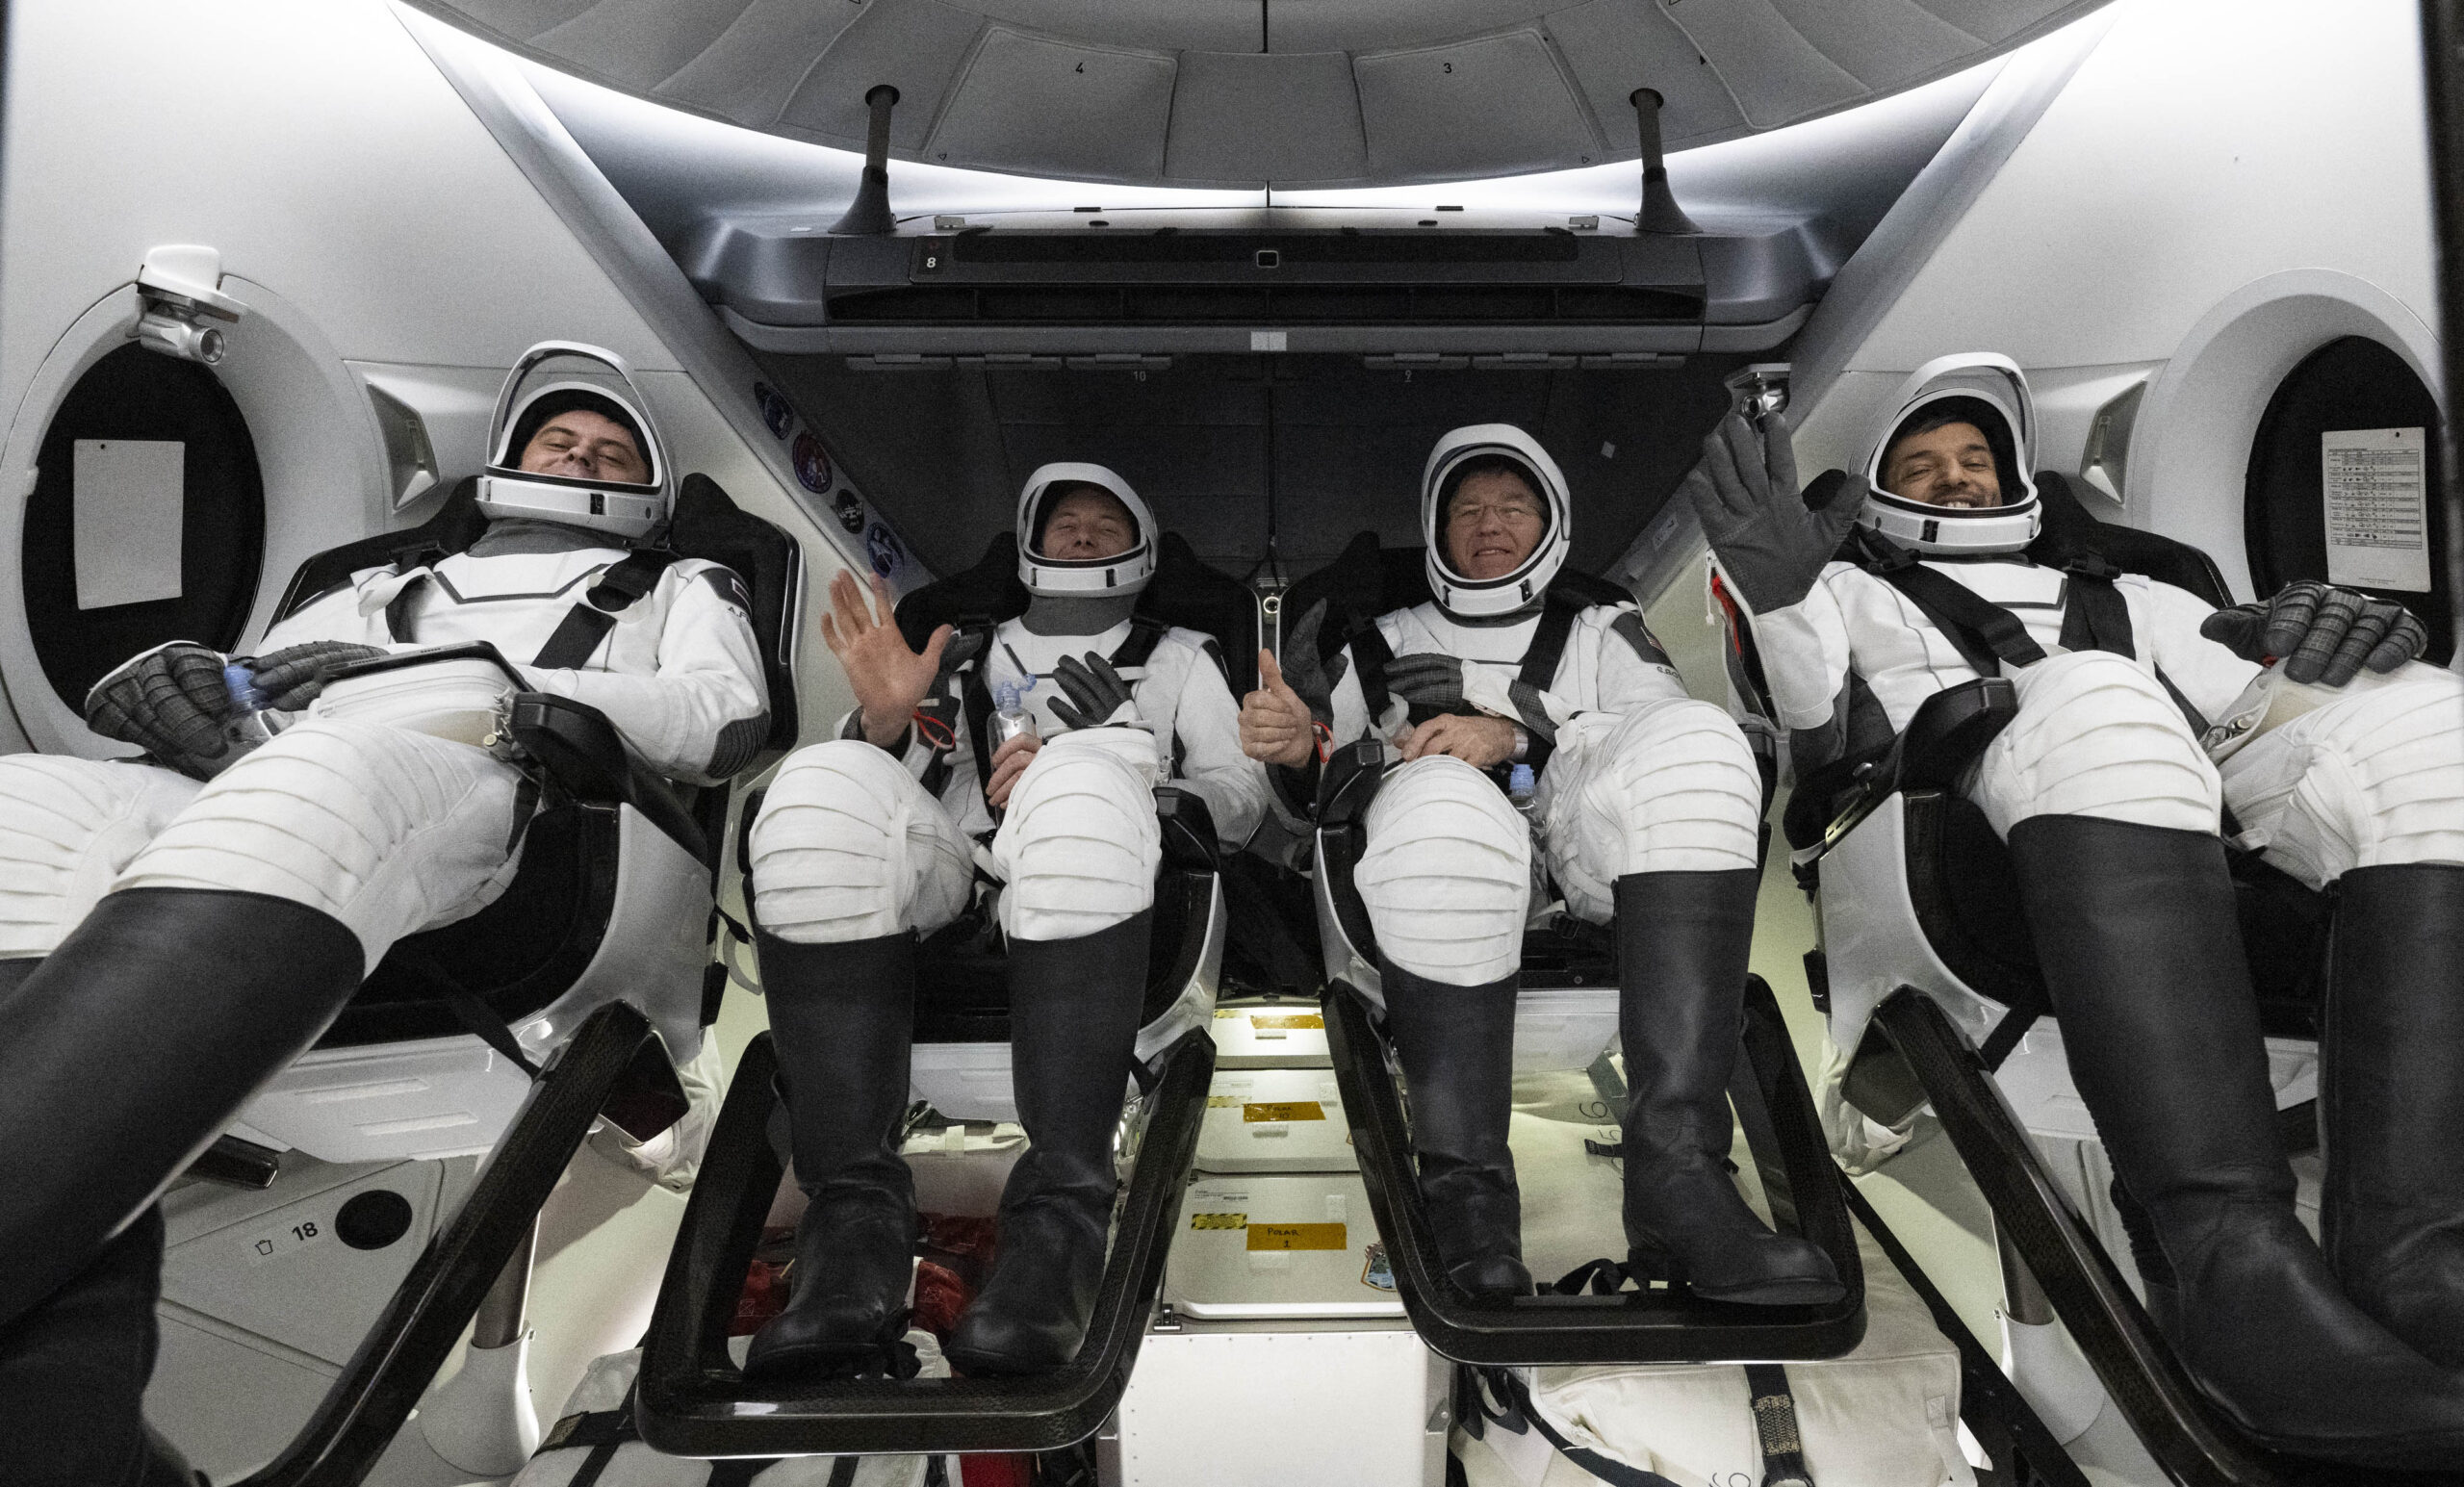 Τέσσερις αστροναύτες επέστρεψαν στη Γη μετά από εξάμηνη παραμονή στον Διεθνή Διαστημικό Σταθμό